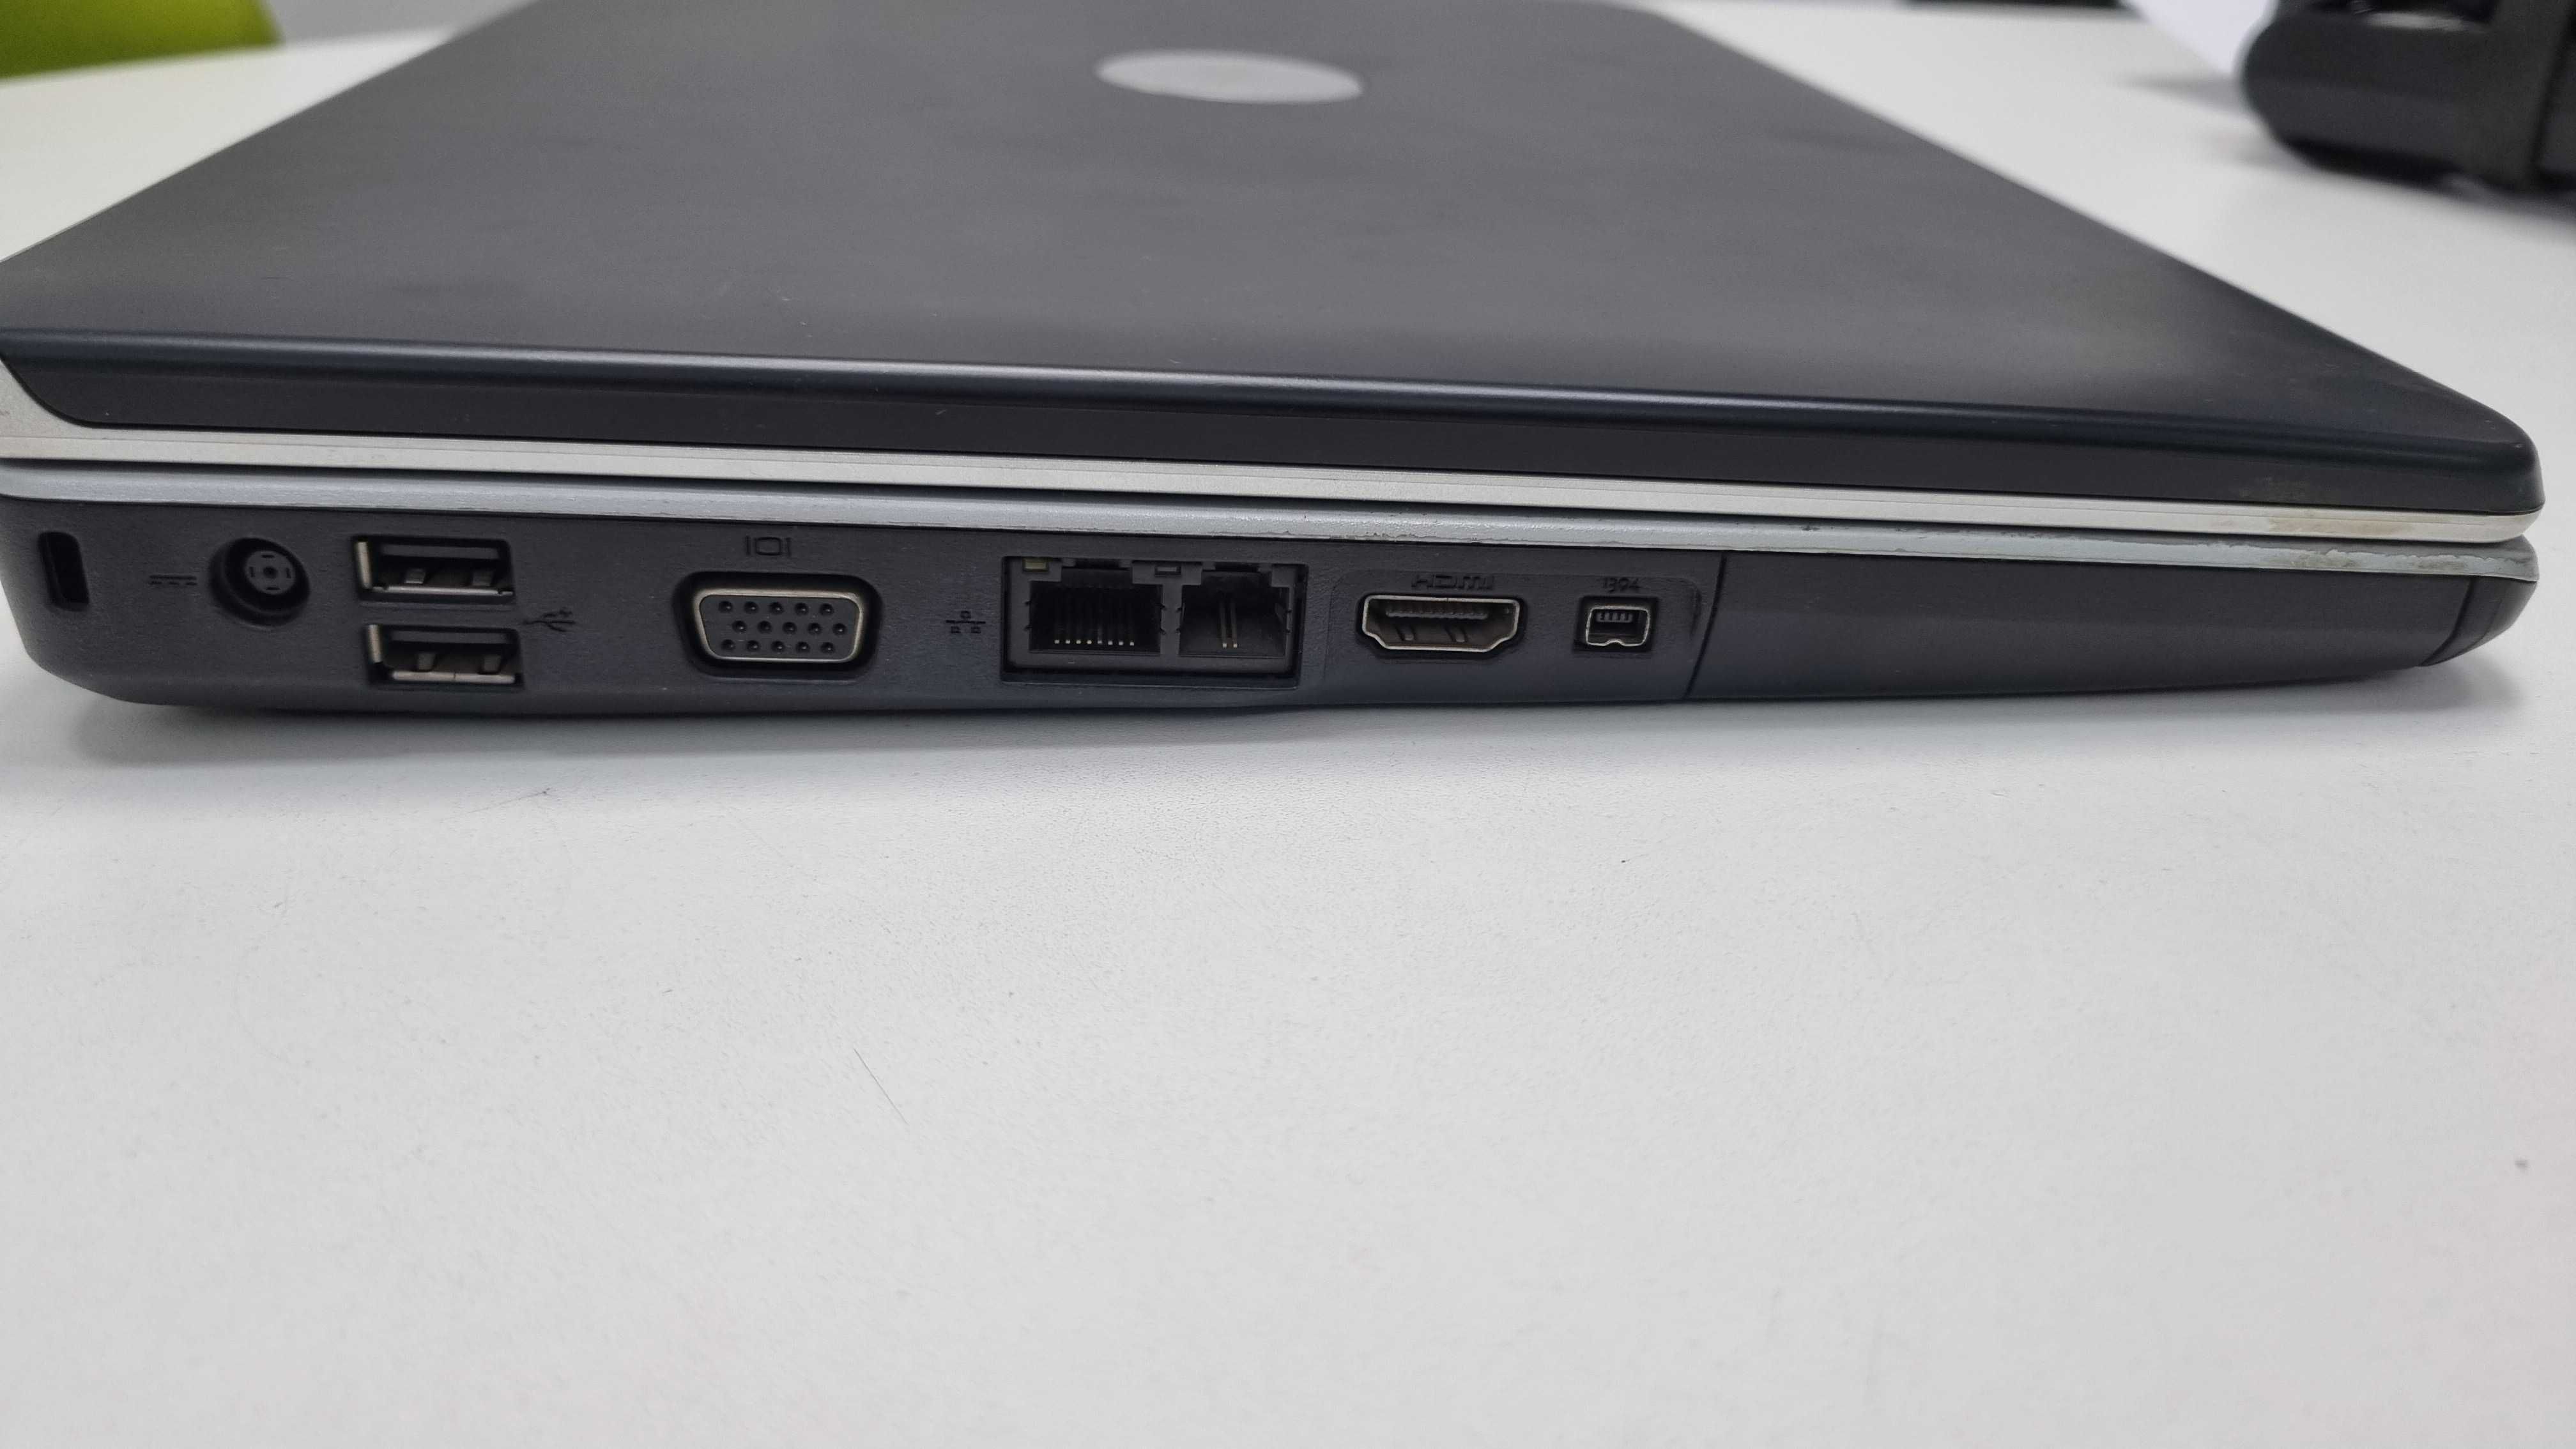 Laptop Dell Inspiron 1525 Win10/Vista sprawny, nieuszkodzony